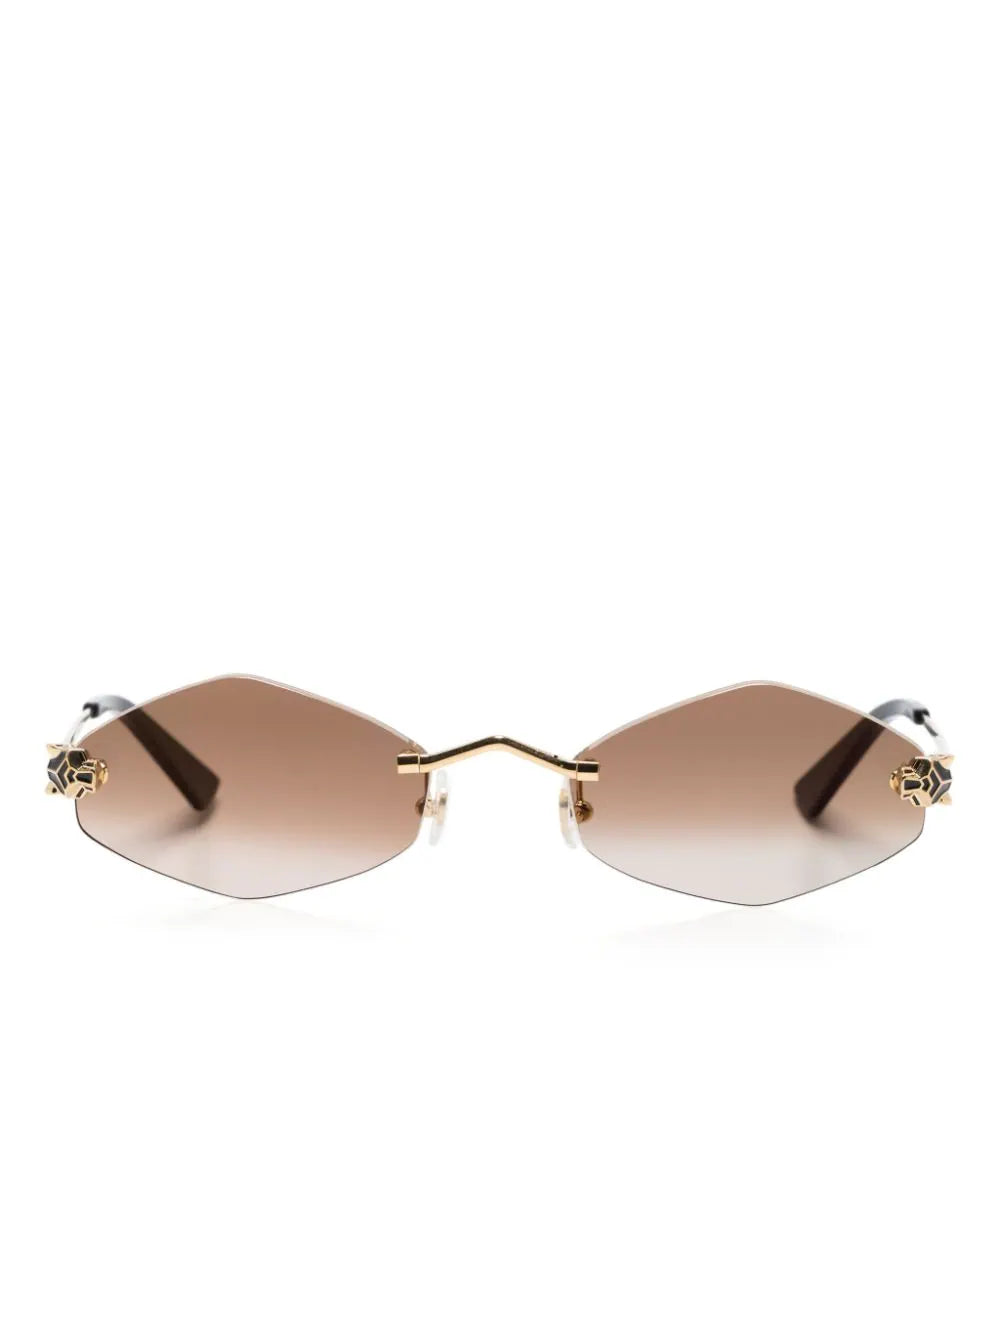 Vintage Cartier Oval Gold Antares 49mm Frame 18k Plated Sunglasses France | Cartier  sunglasses, Vintage cartier, Sunglasses